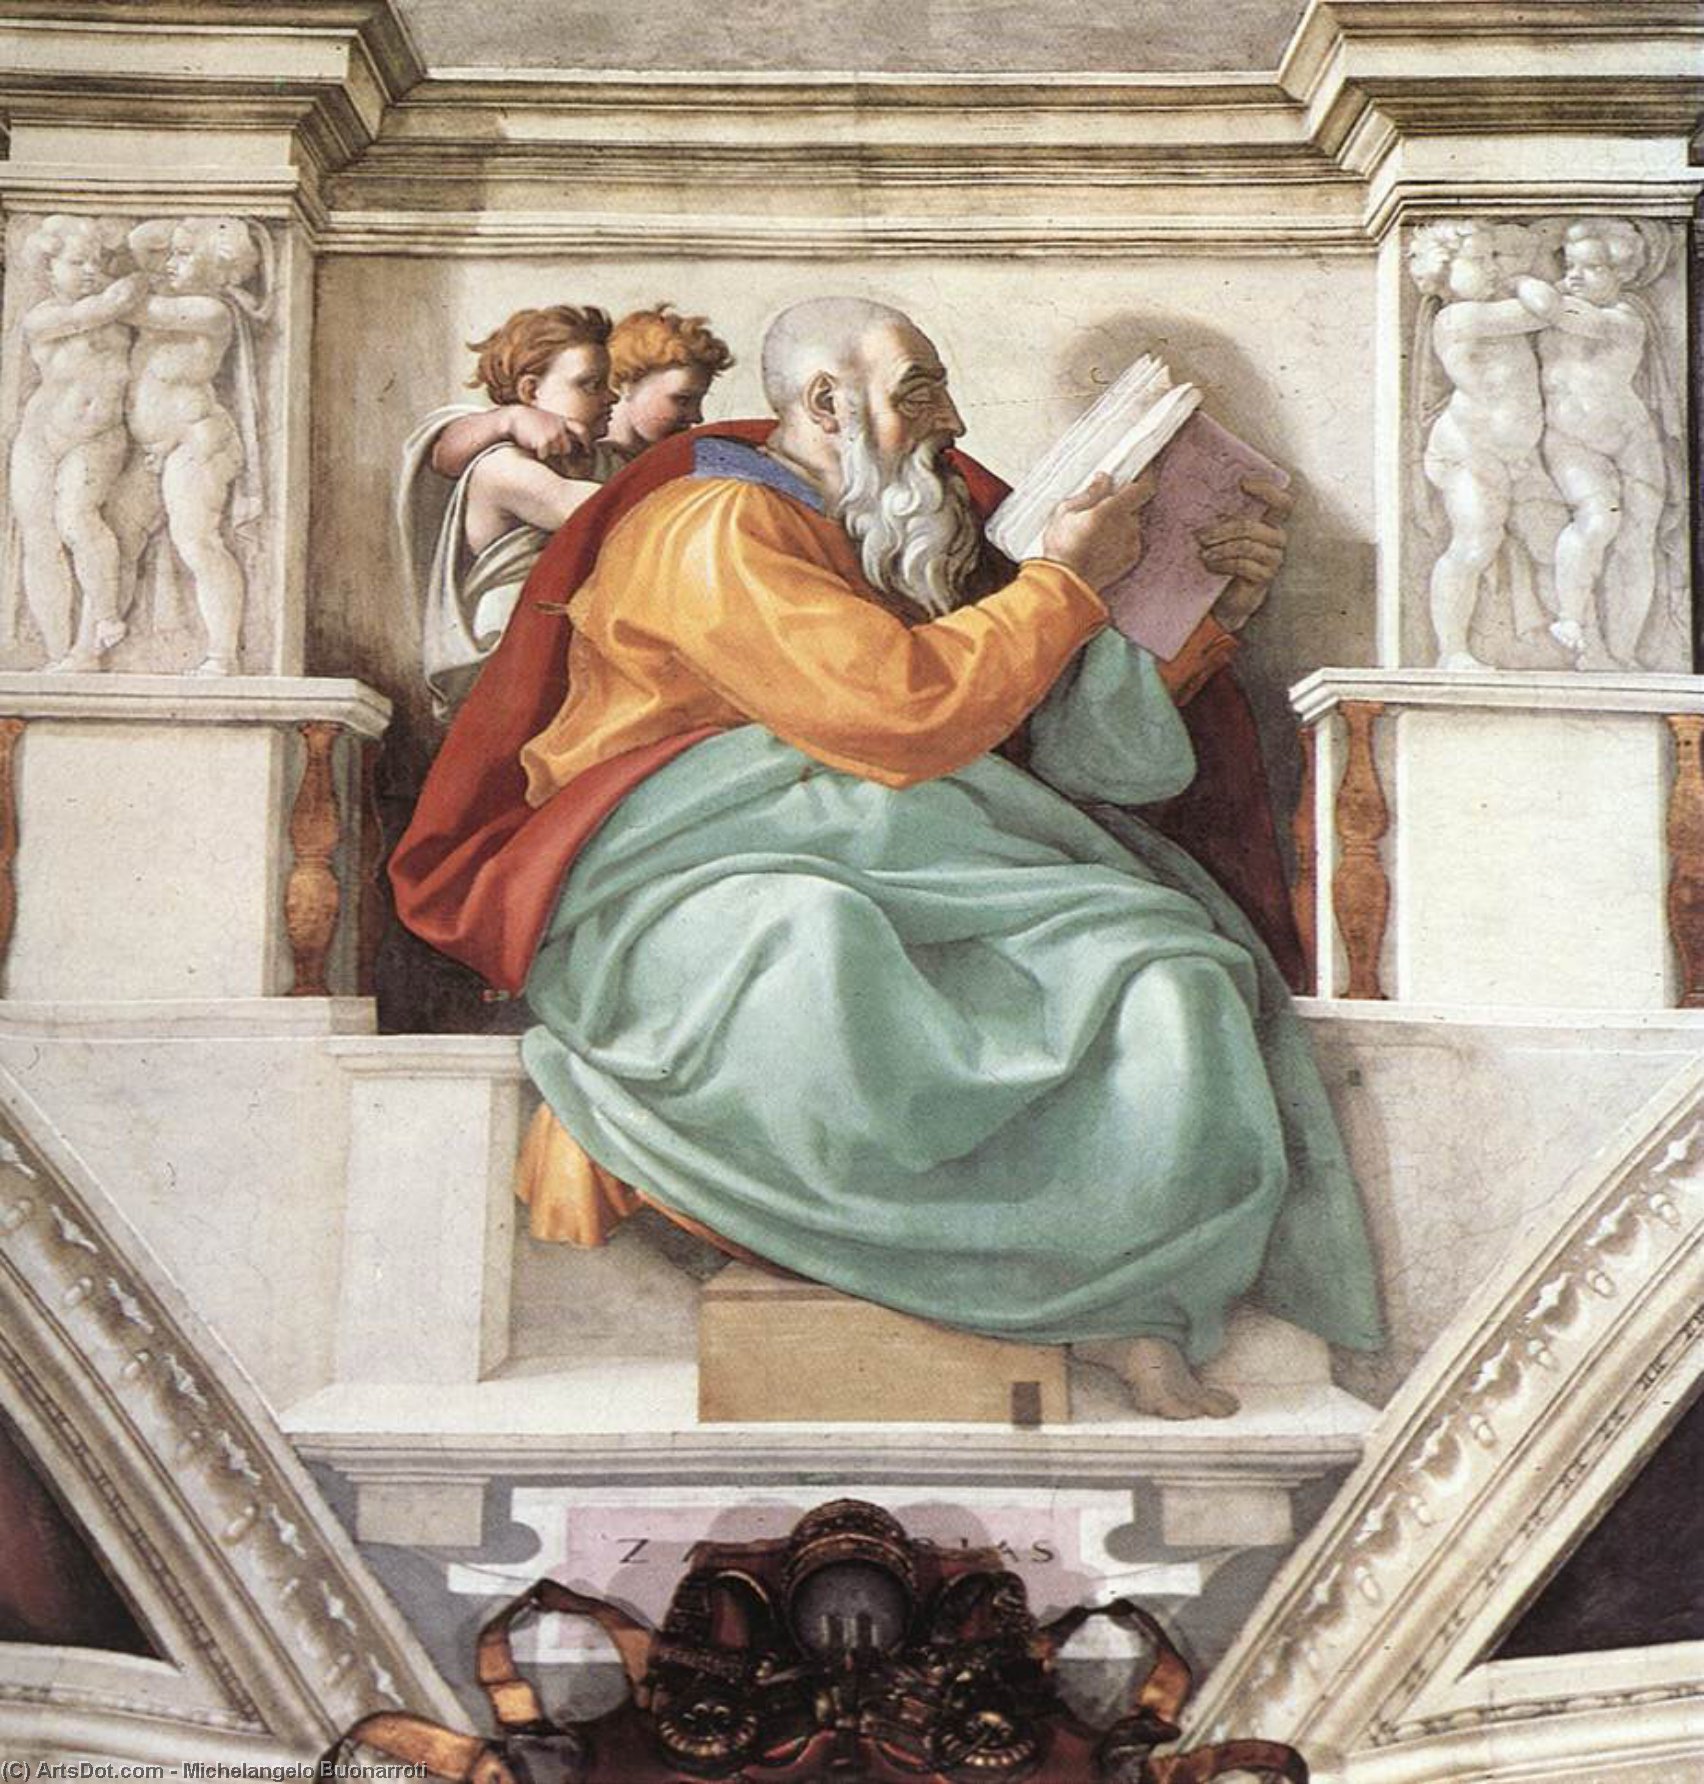 WikiOO.org - Encyclopedia of Fine Arts - Lukisan, Artwork Michelangelo Buonarroti - Zechariah